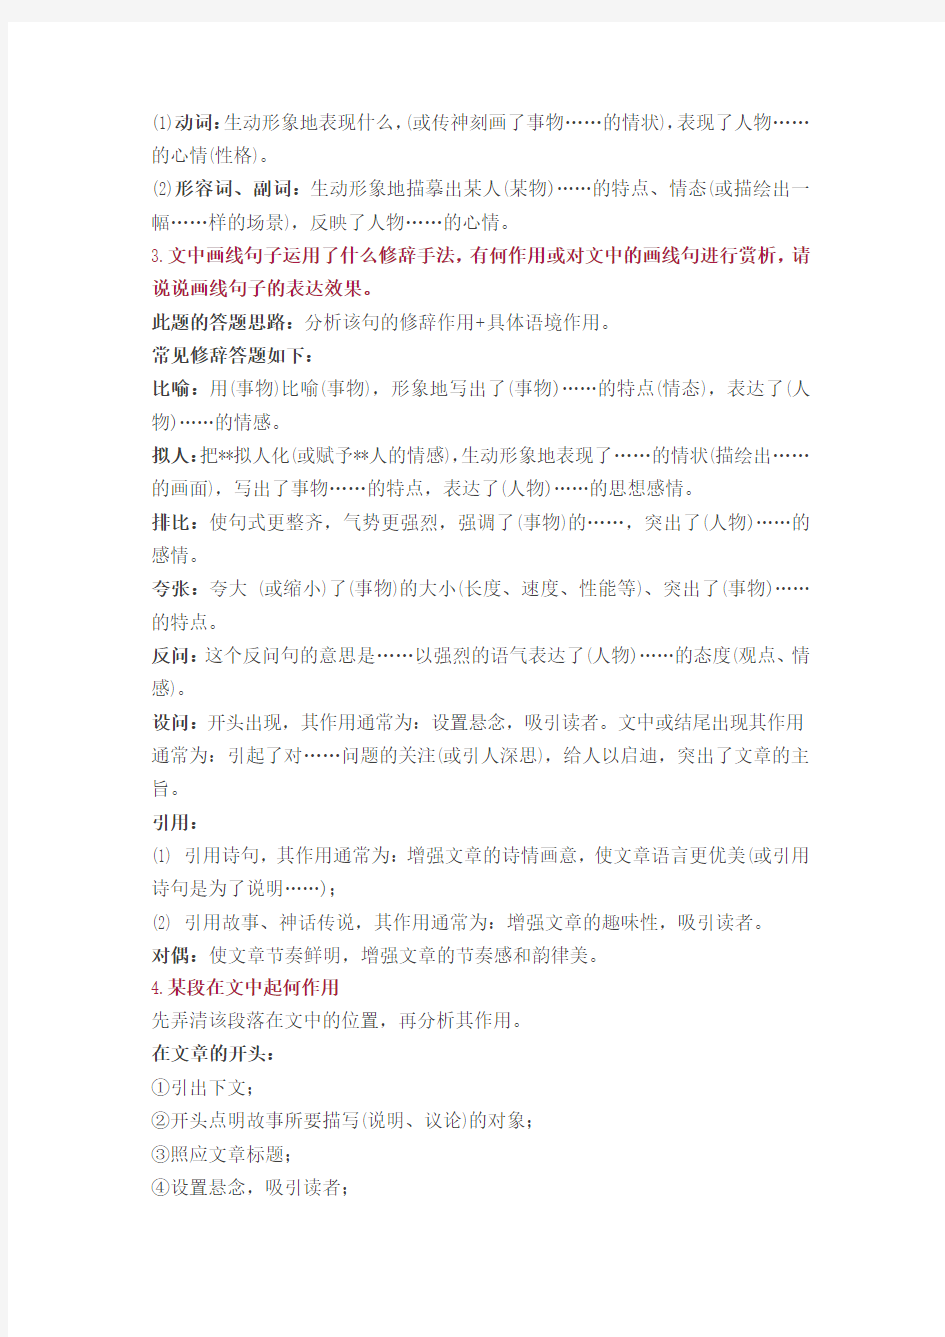 初中语文现代文阅读的15个常考题+答题模板